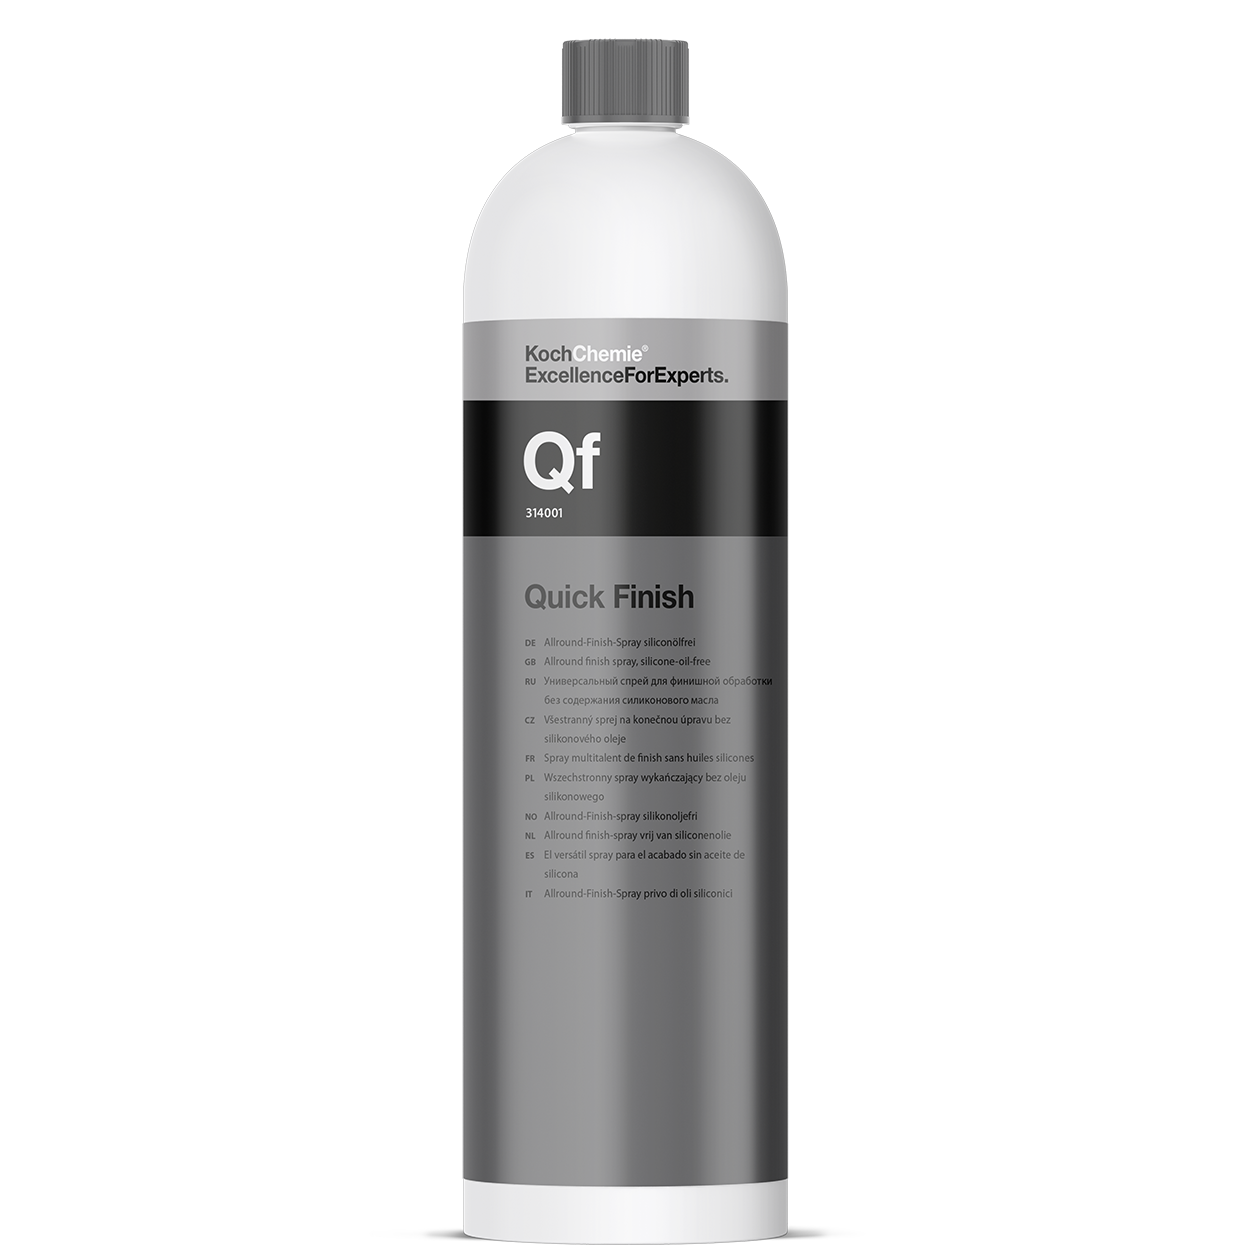 Quick Finish Qf - Allround-Finish-Spray siliconölfrei 1l